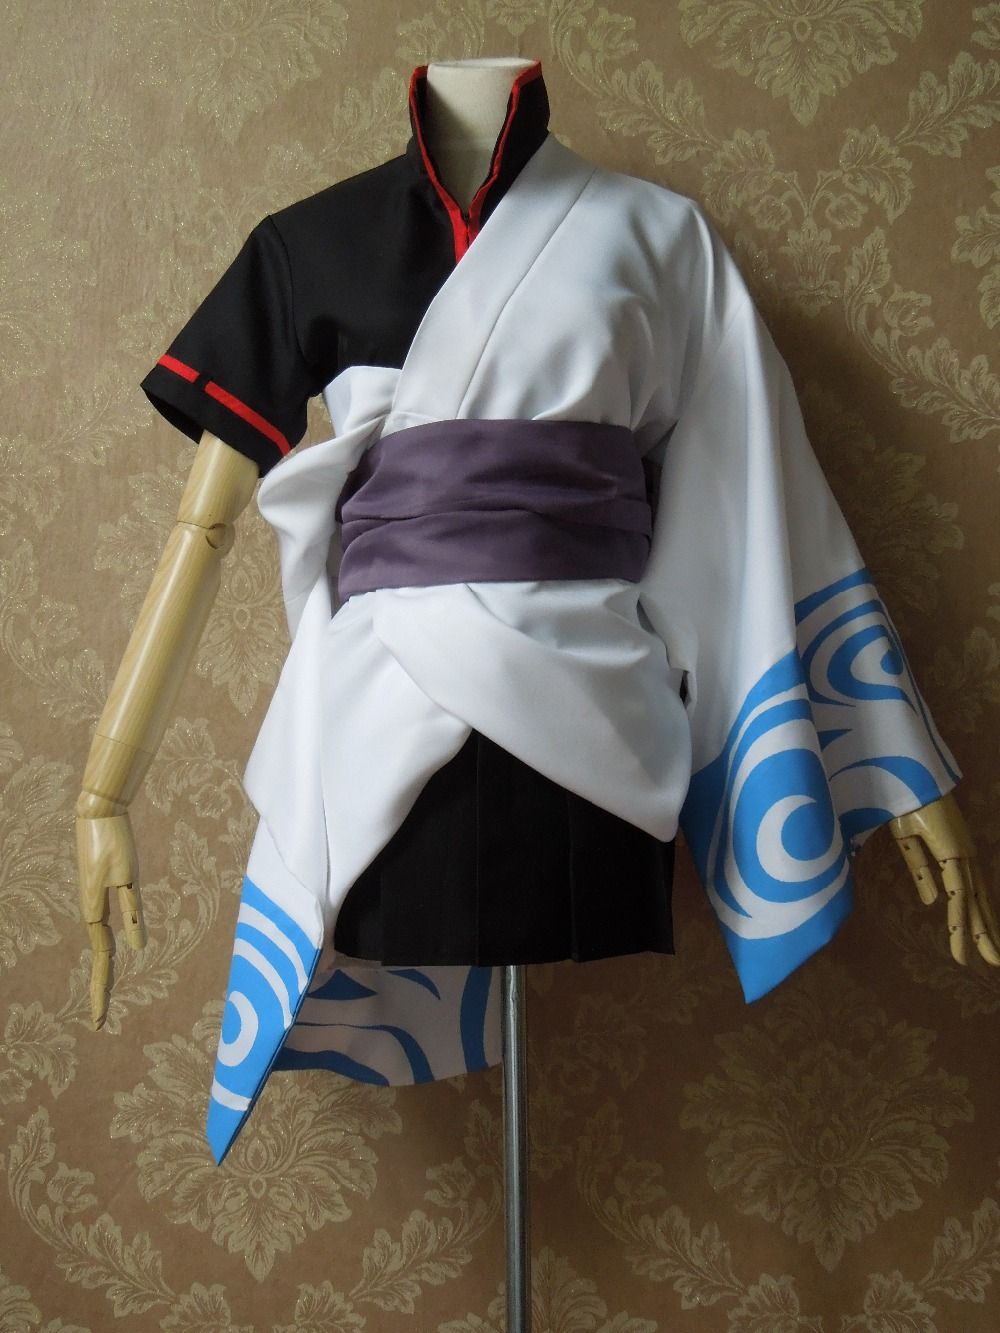 Gintama Sakata Gintoki Cosplay Costume Lolita Cloak Kimono Bathrobe Anime 